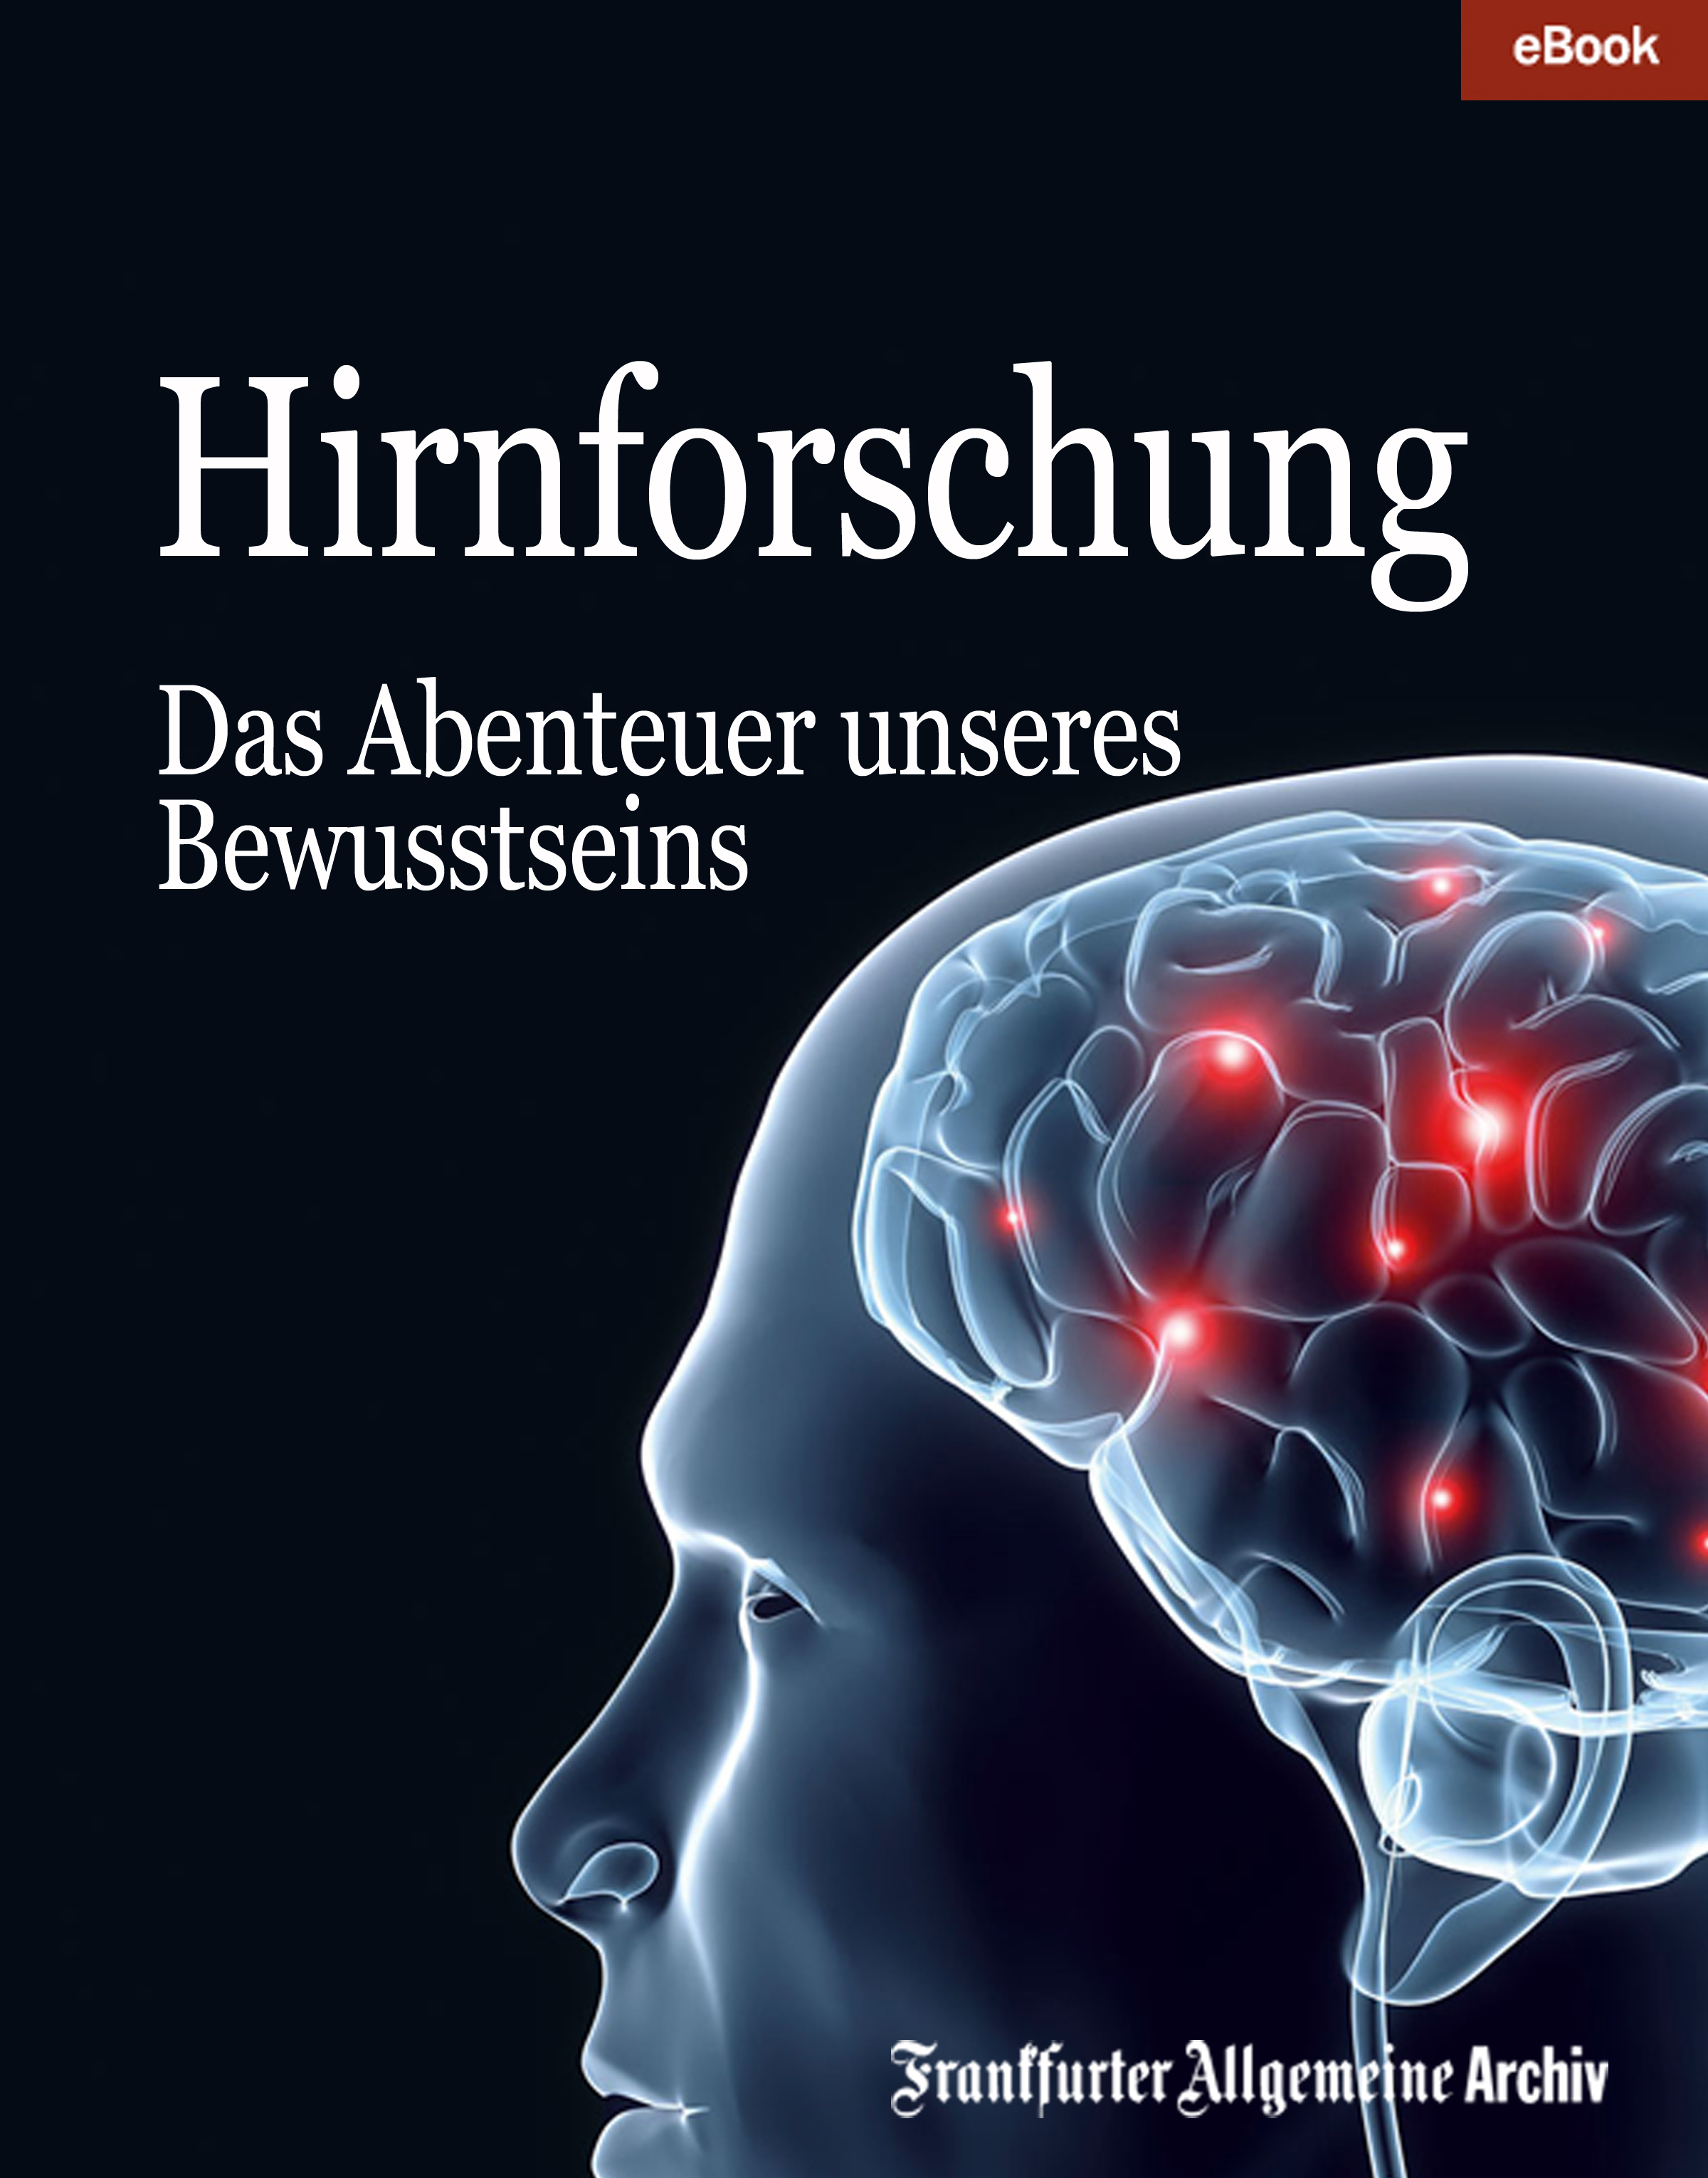 Frankfurter Allgemeine Archiv Hirnforschung